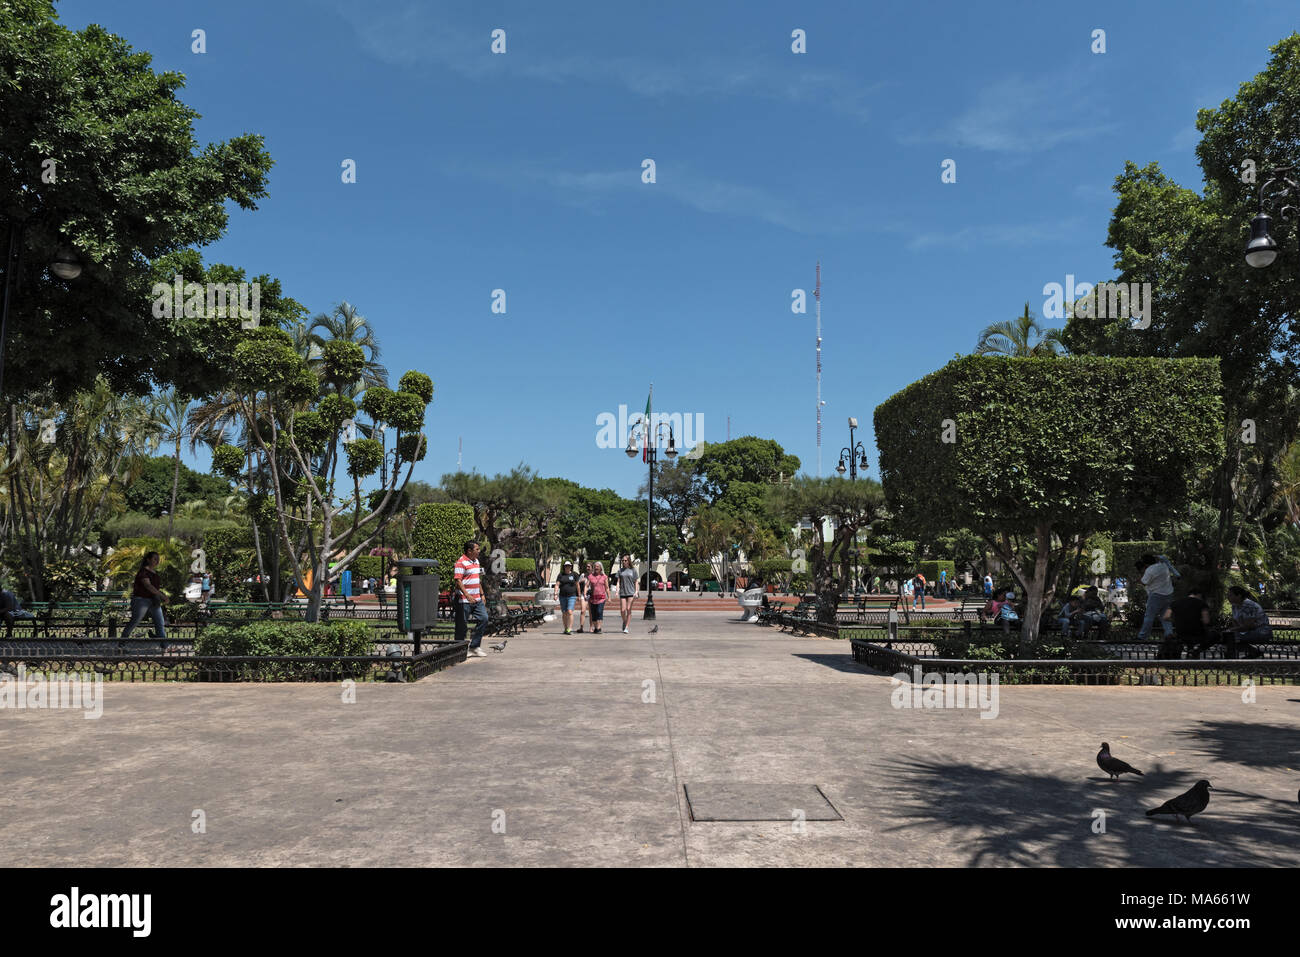 Vista de la plaza La plaza grande o Plaza de la Independencia en Mérida, Yucatán, México Foto de stock